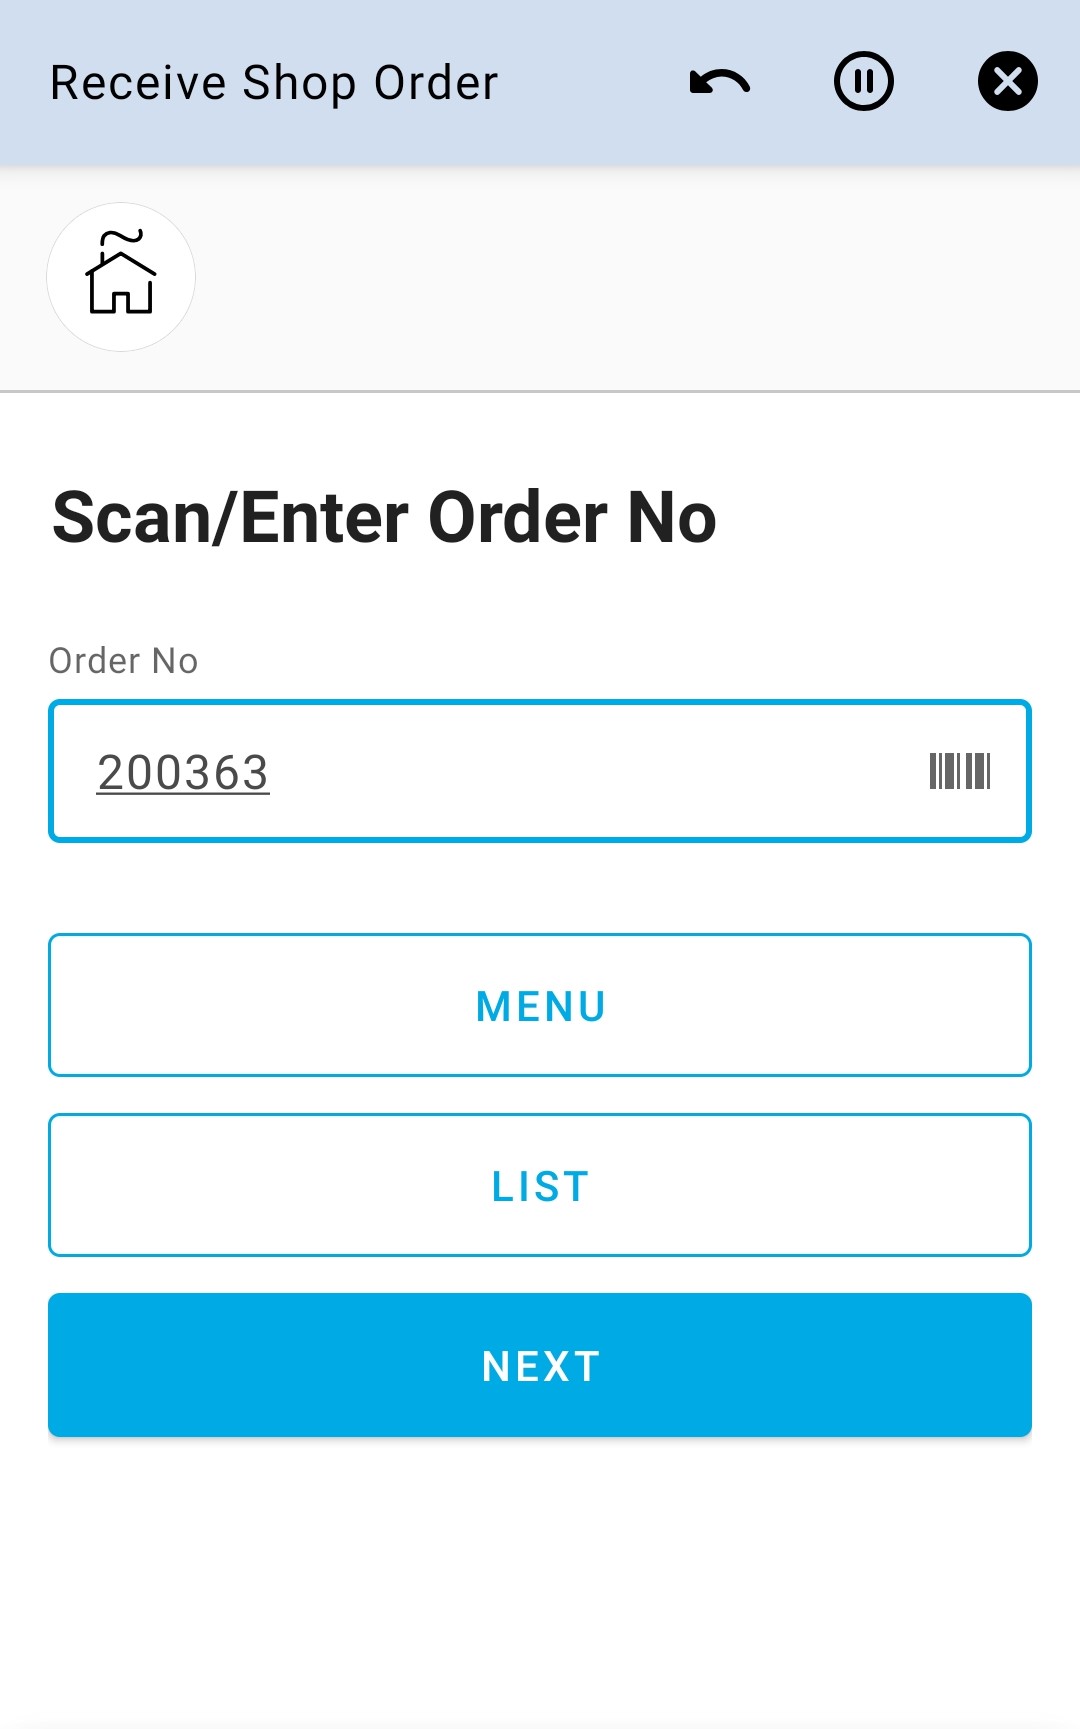 Enter Order No 7